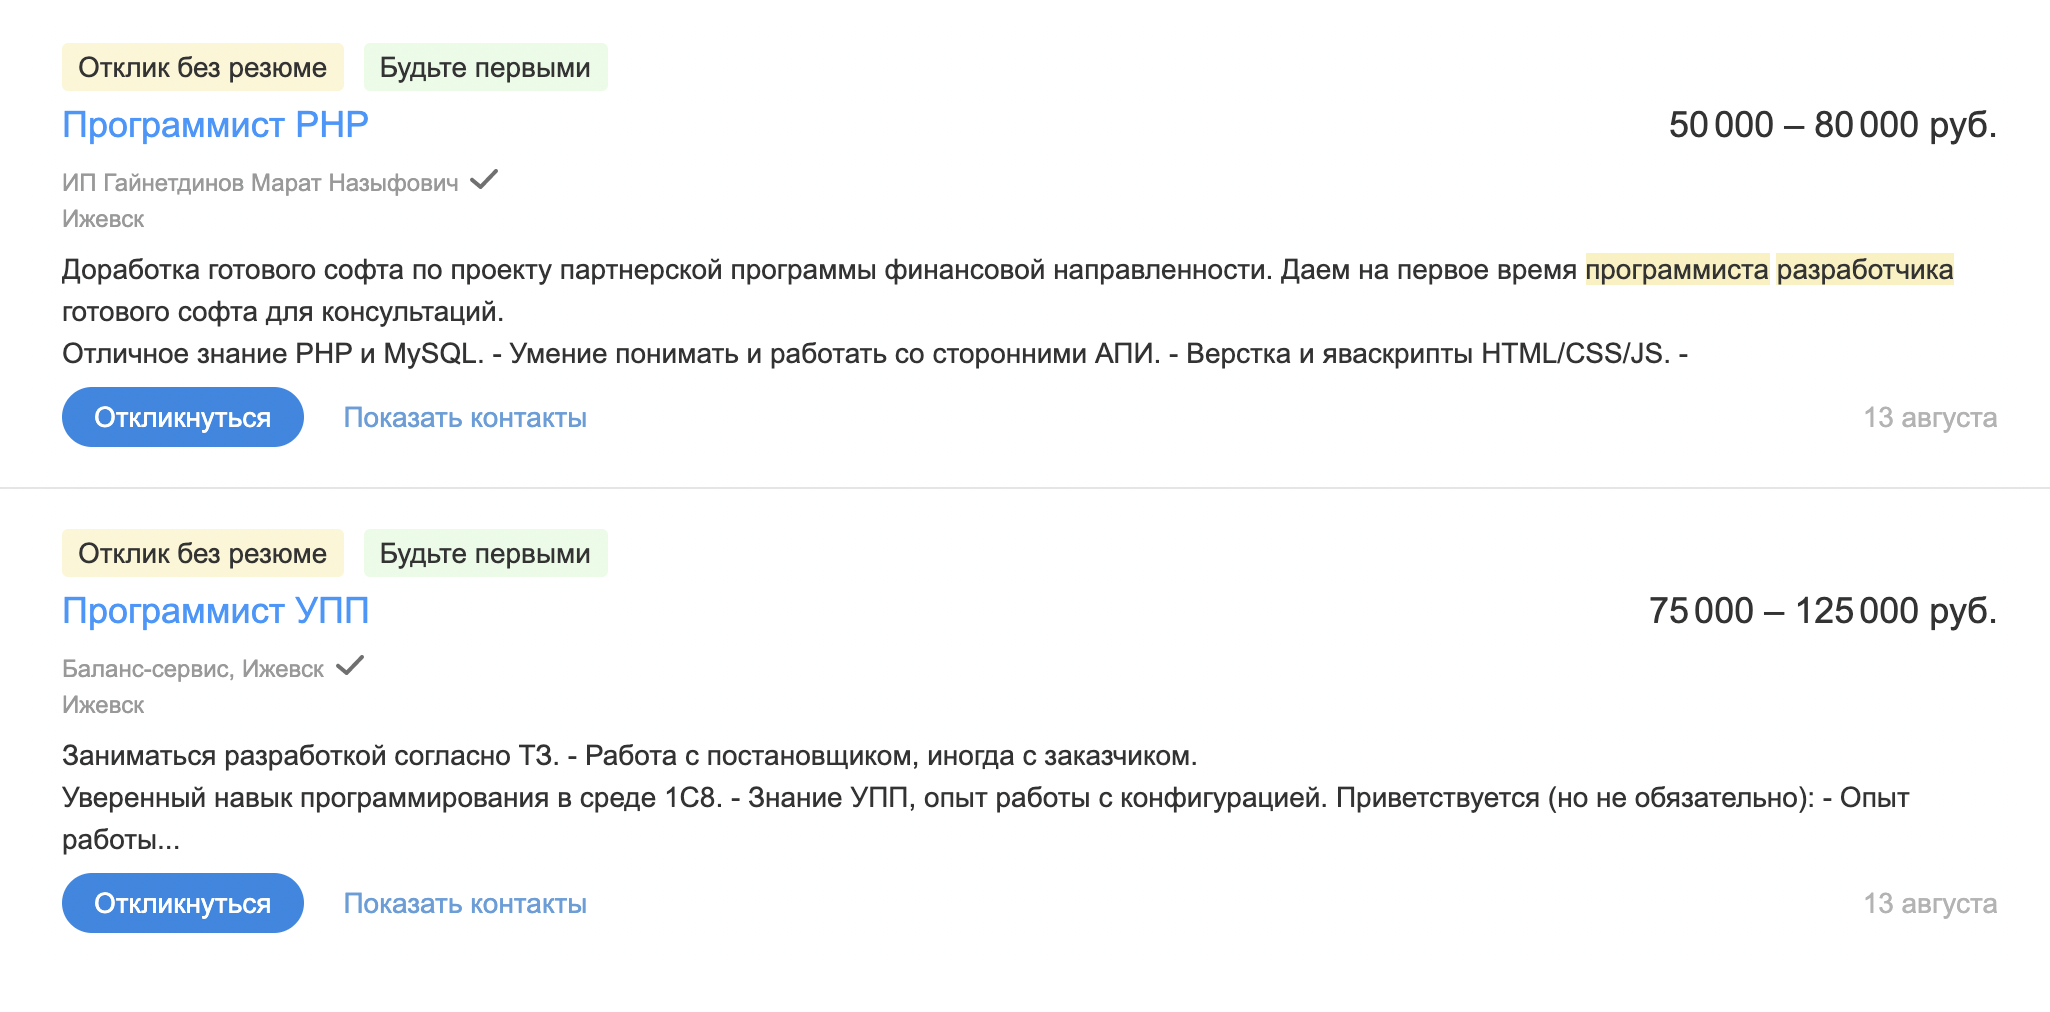 «Хедхантер» говорит, что опытные разработчики могут зарабатывать в Ижевске до 250 тысяч рублей